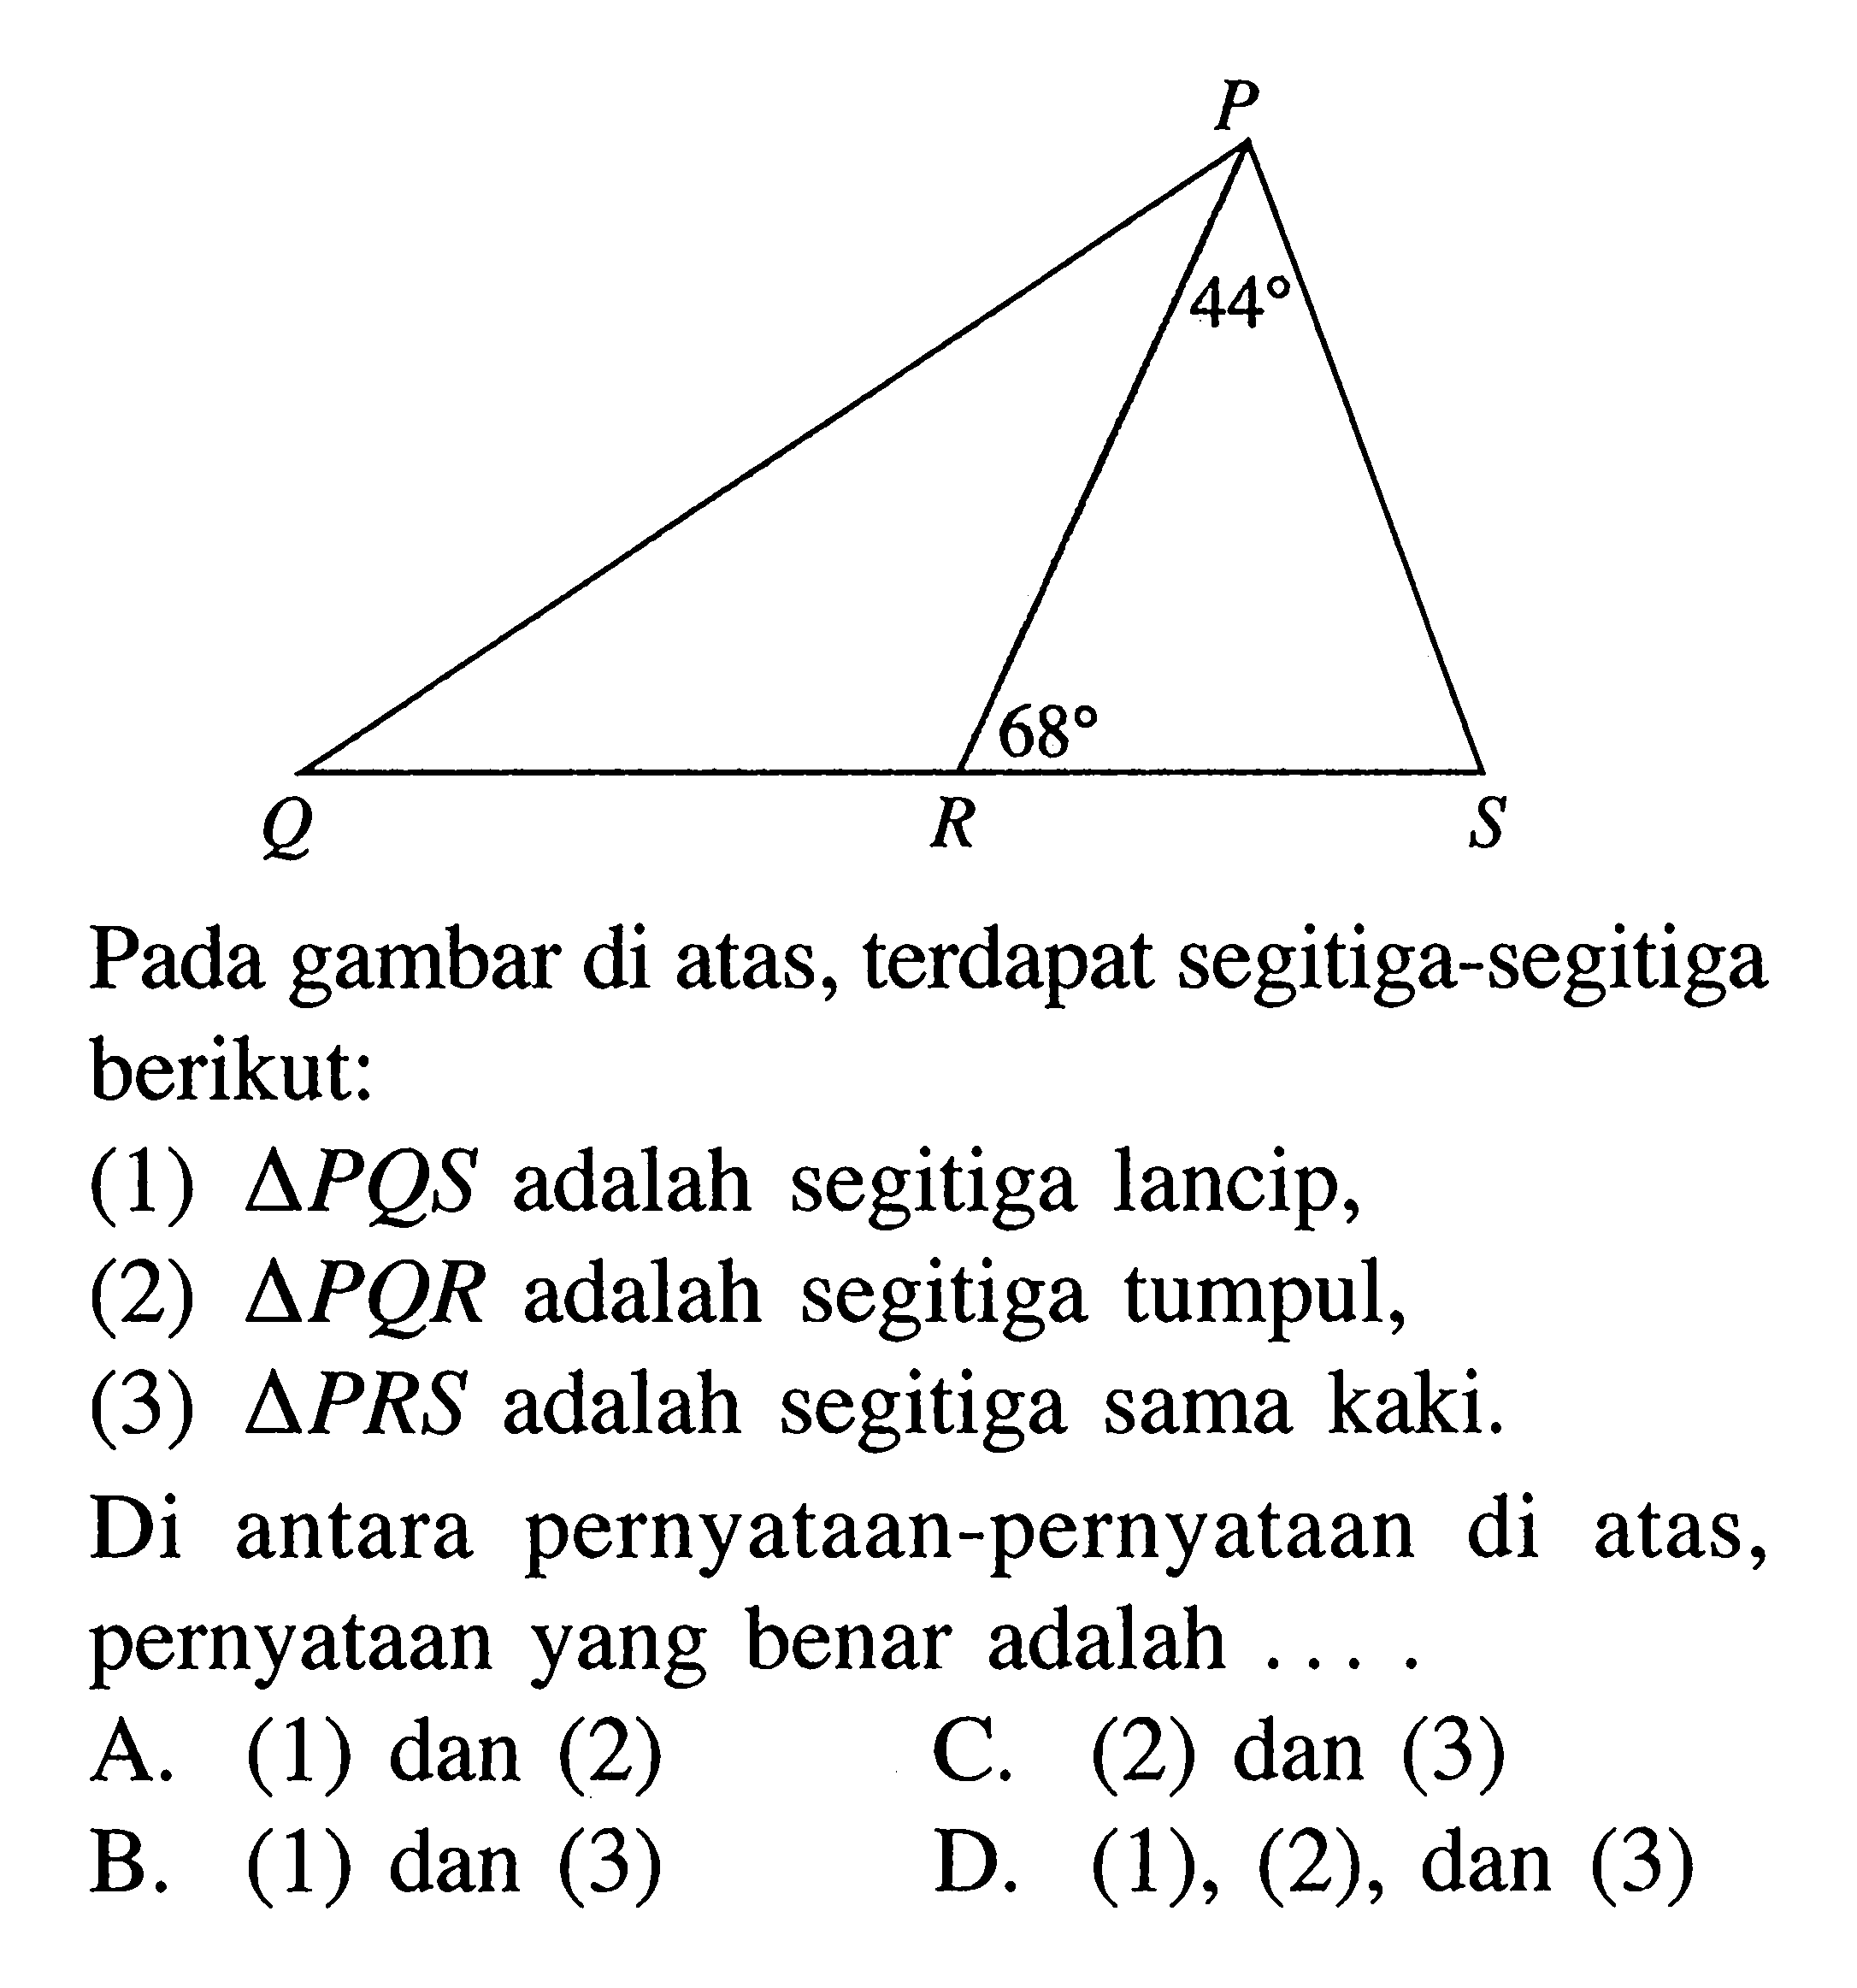 Pada gambar di atas, terdapat segitiga-segitiga berikut:(1)  segitiga PQS adalah segitiga lancip,(2)  segitiga PQR adalah segitiga tumpul,(3)  segitiga PRS adalah segitiga sama kaki.Di antara pernyataan-pernyataan di atas, pernyataan yang benar adalah ....